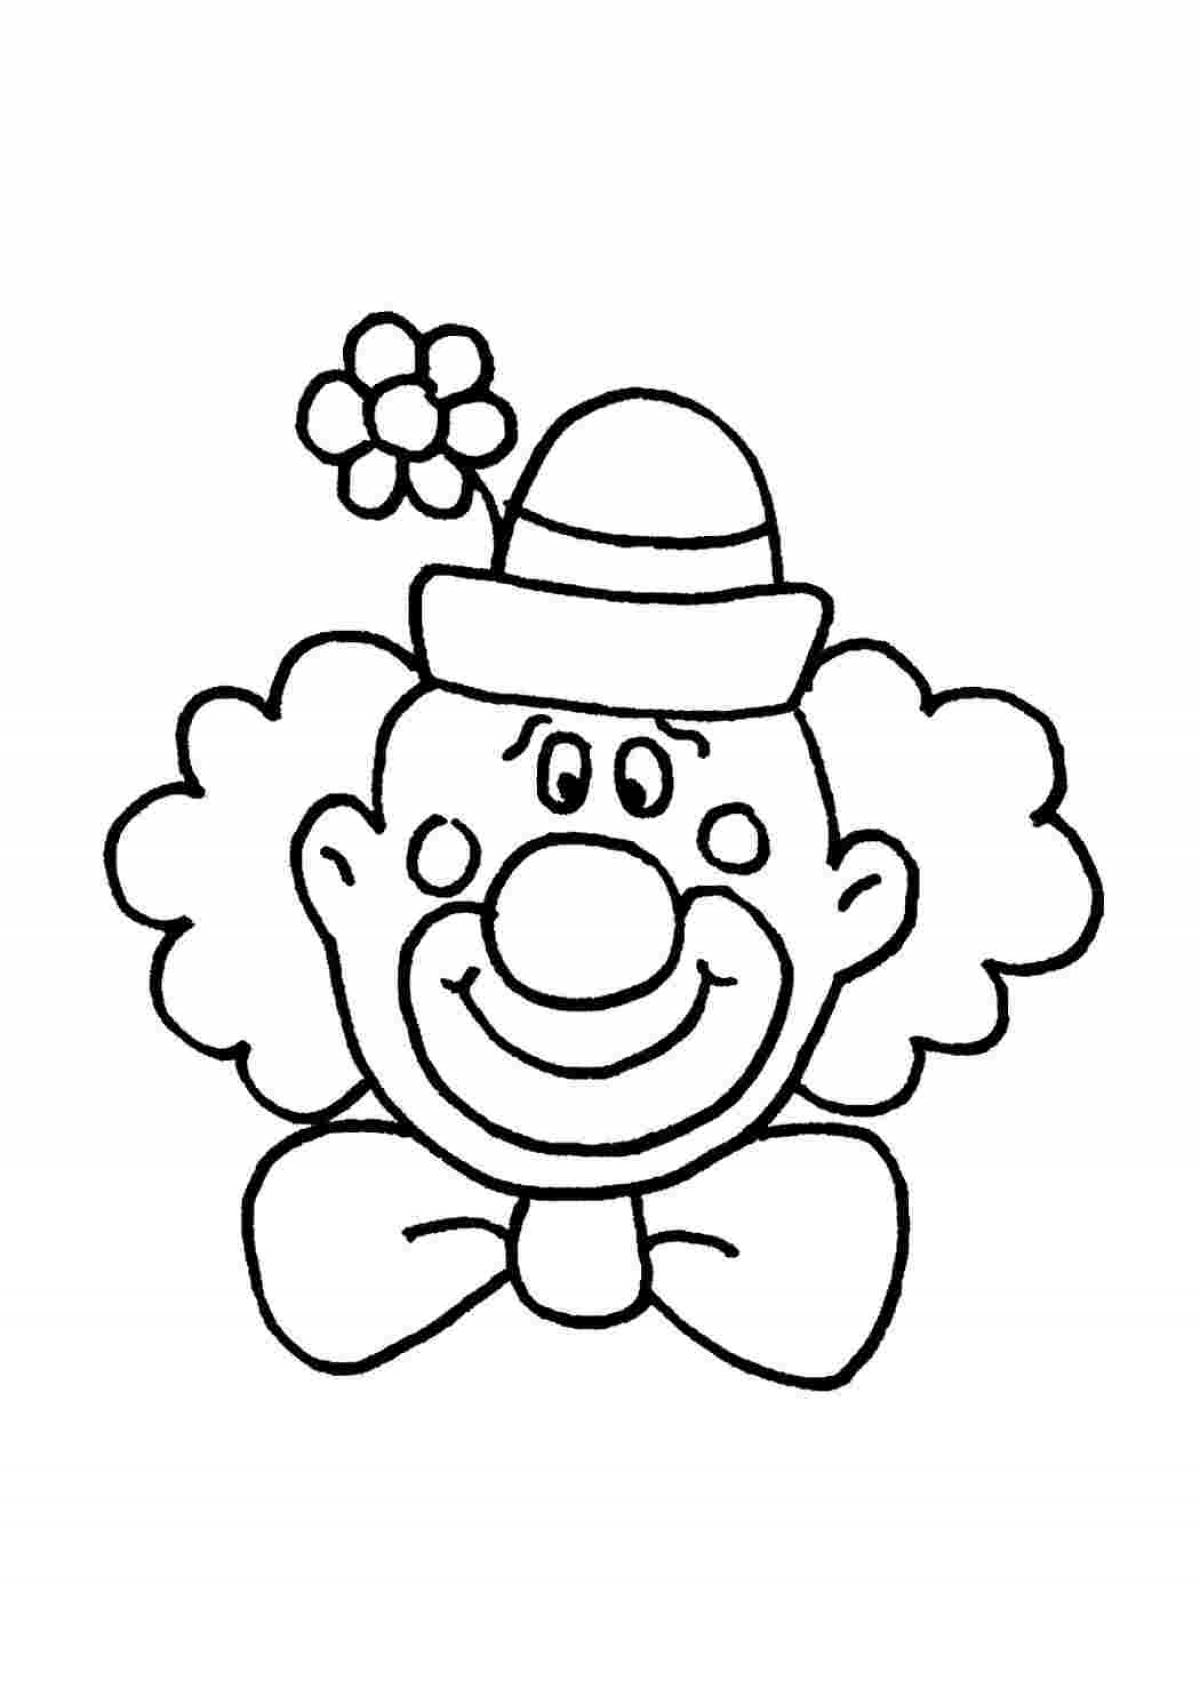 Клоун раскраска для детей 4 5. Клоун раскраска. Клоун раскраска для малышей. Клоун раскраска для детей. Клоун для раскрашивания детям.